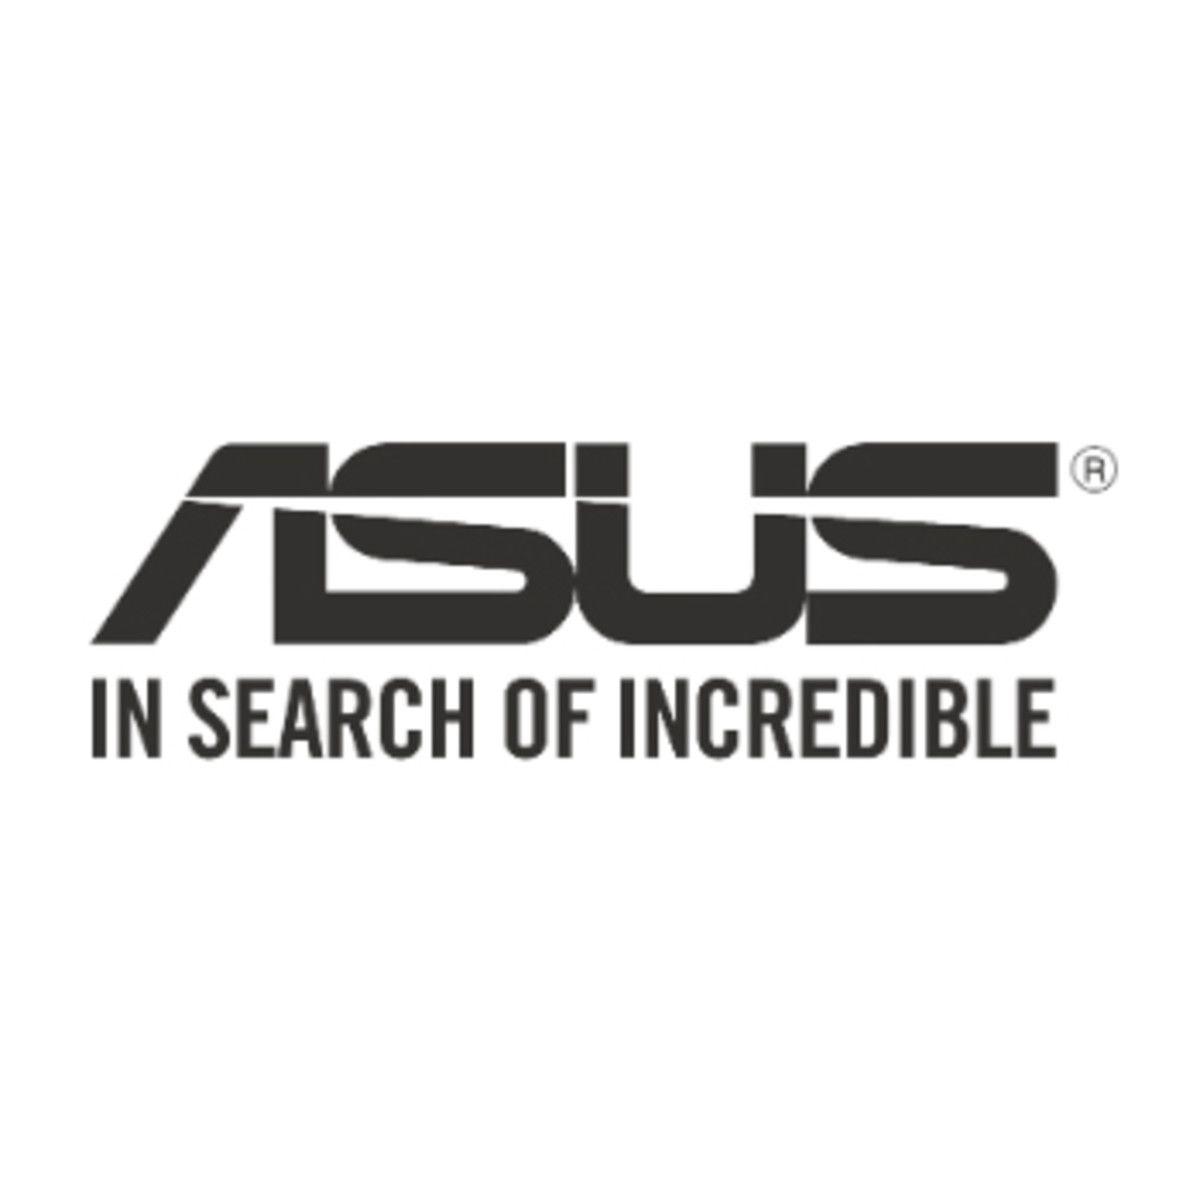 Asus OEM Logo - PCR Awards 2017: ASUS joins as Red Carpet sponsor - PC Retail